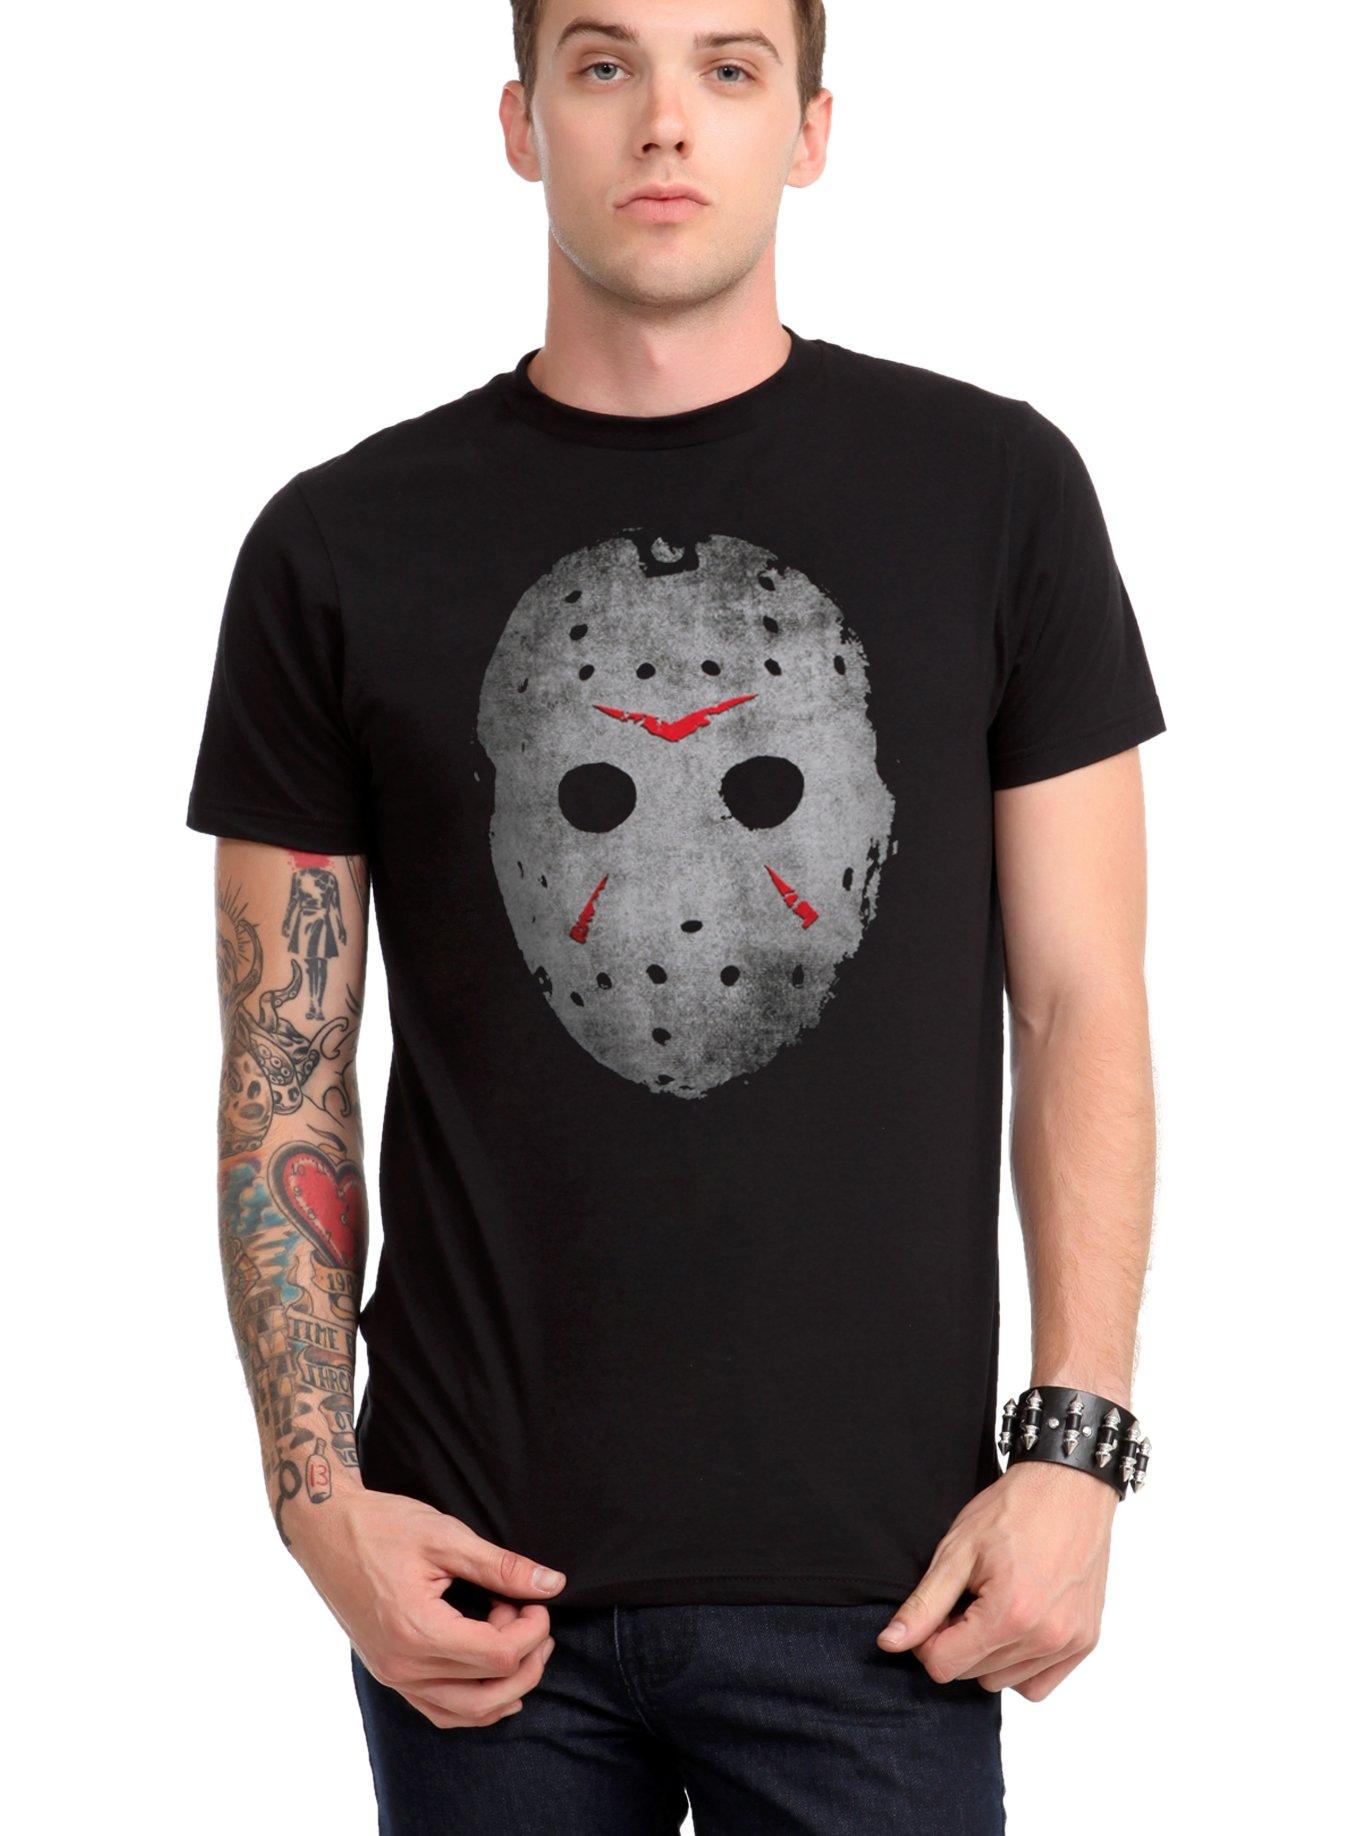 Friday The 13th Jason Mask T-Shirt, , hi-res